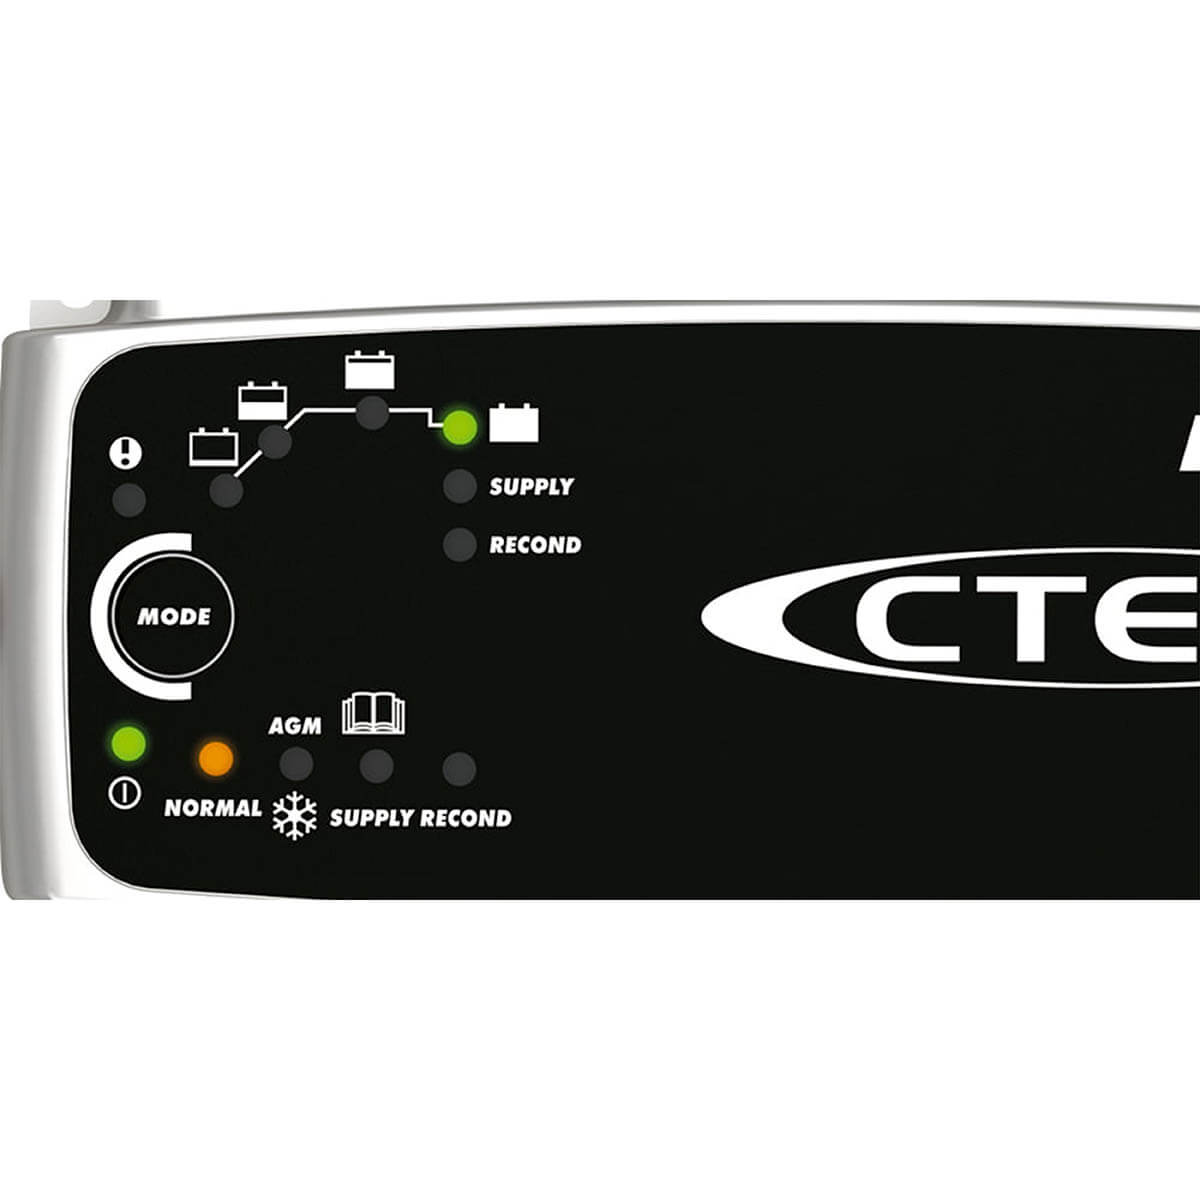 CTEK MXS 7 Chargeur Batterie plomb 12v 7A